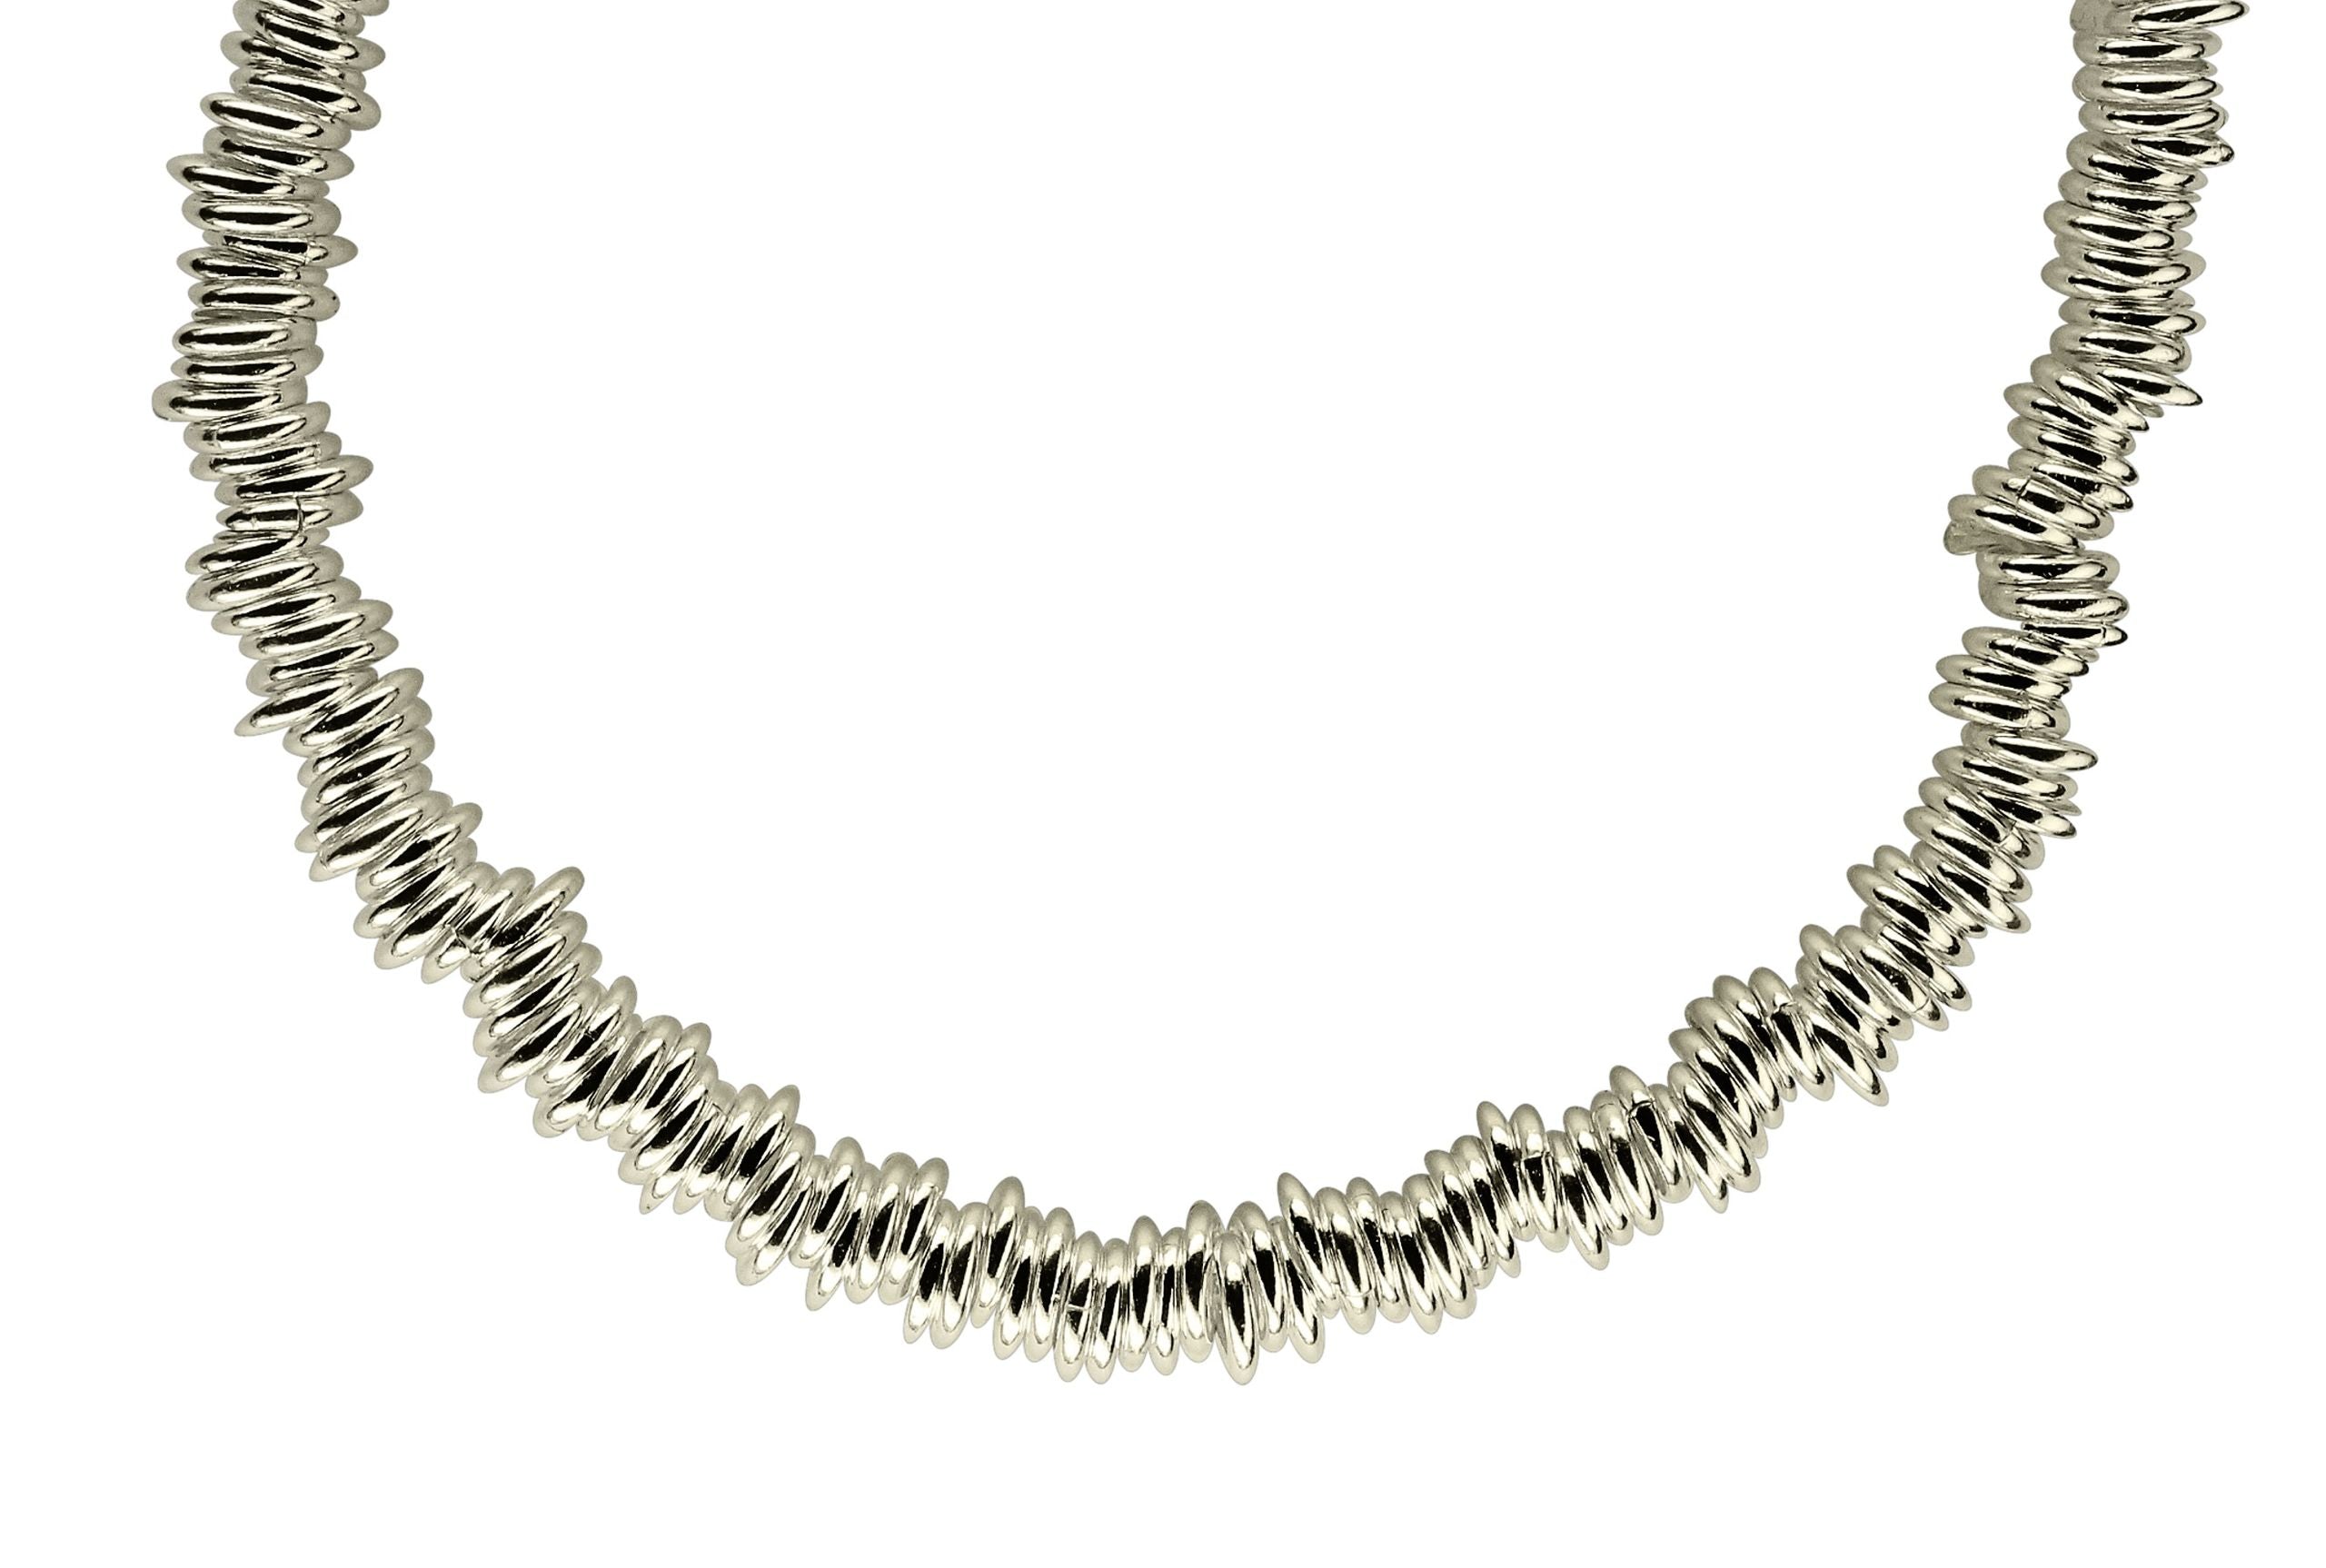 Ein Silberarmband für Damen aus vielen kleinen Silberringen mit einem dekorativen Verschluss.